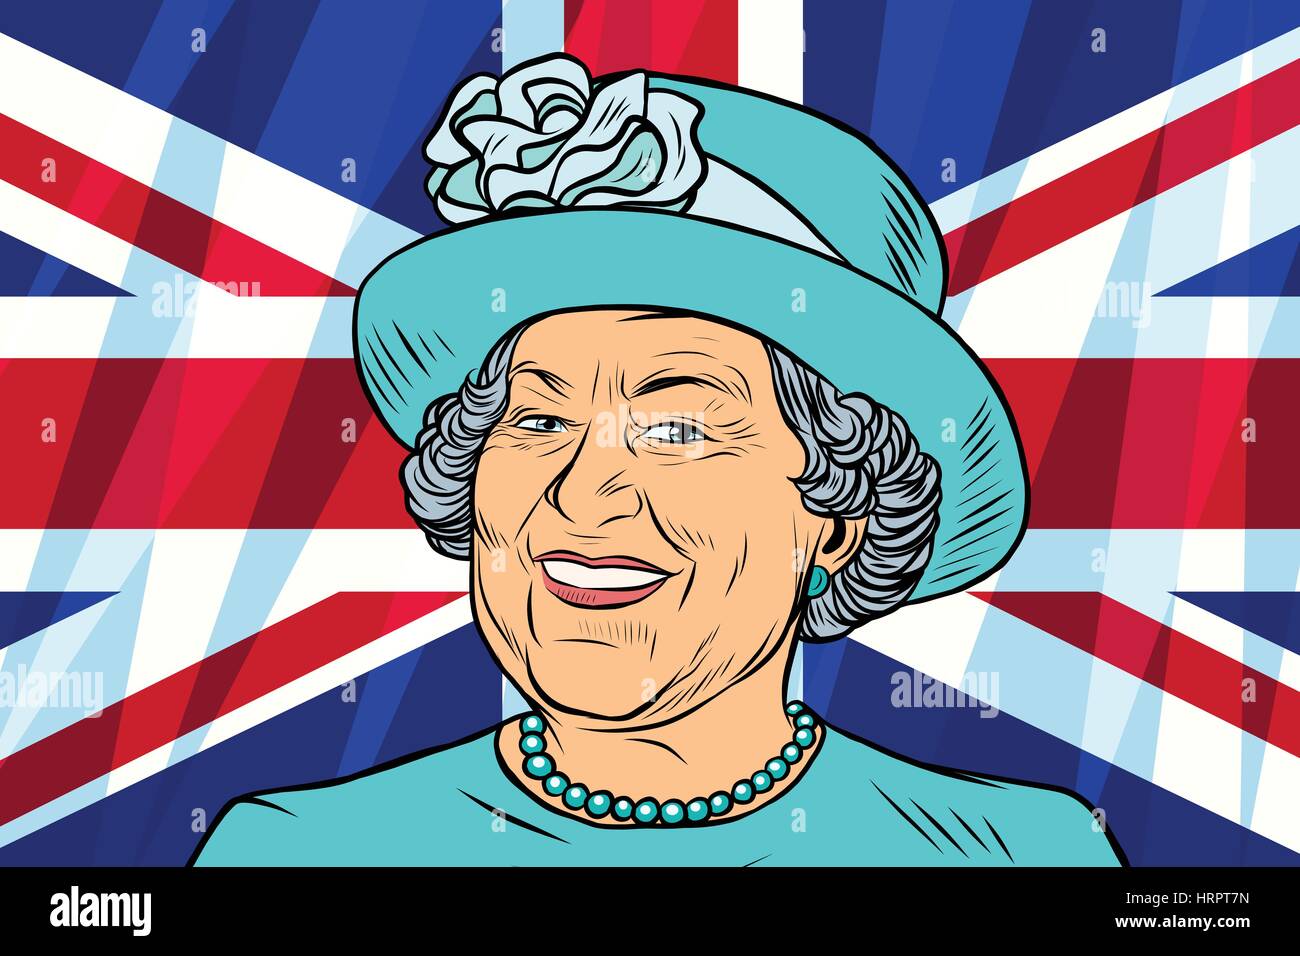 Elisabeth II. Königin von Großbritannien, Kanada, Australien und  Neuseeland. Britische Flagge. Vintage Comics Cartoons Abbildung Pop-Art  Retro-Vektor Stock-Vektorgrafik - Alamy